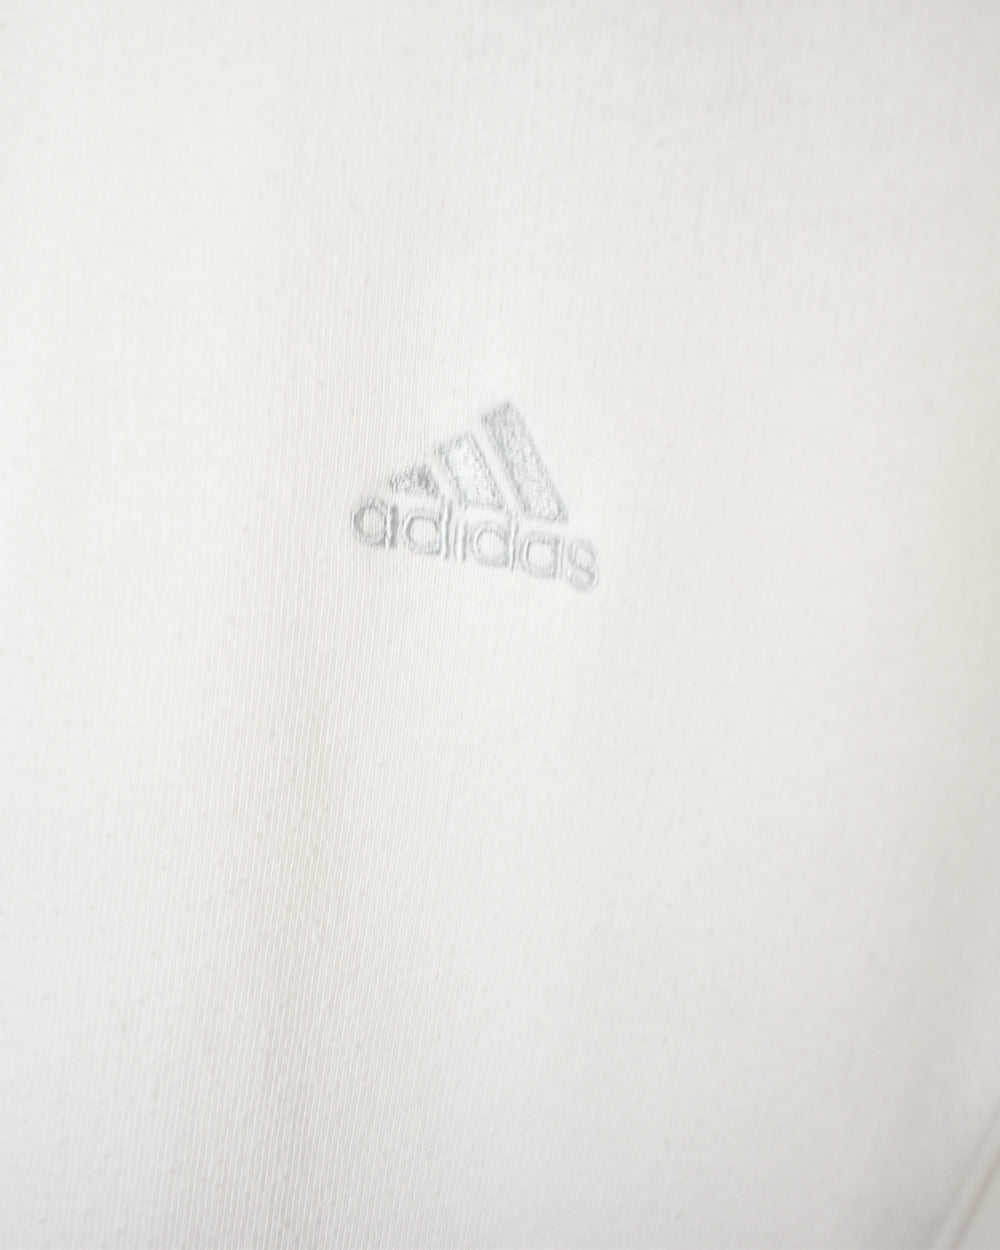 White Adidas 1/4 Zip Sweatshirt - Small women's